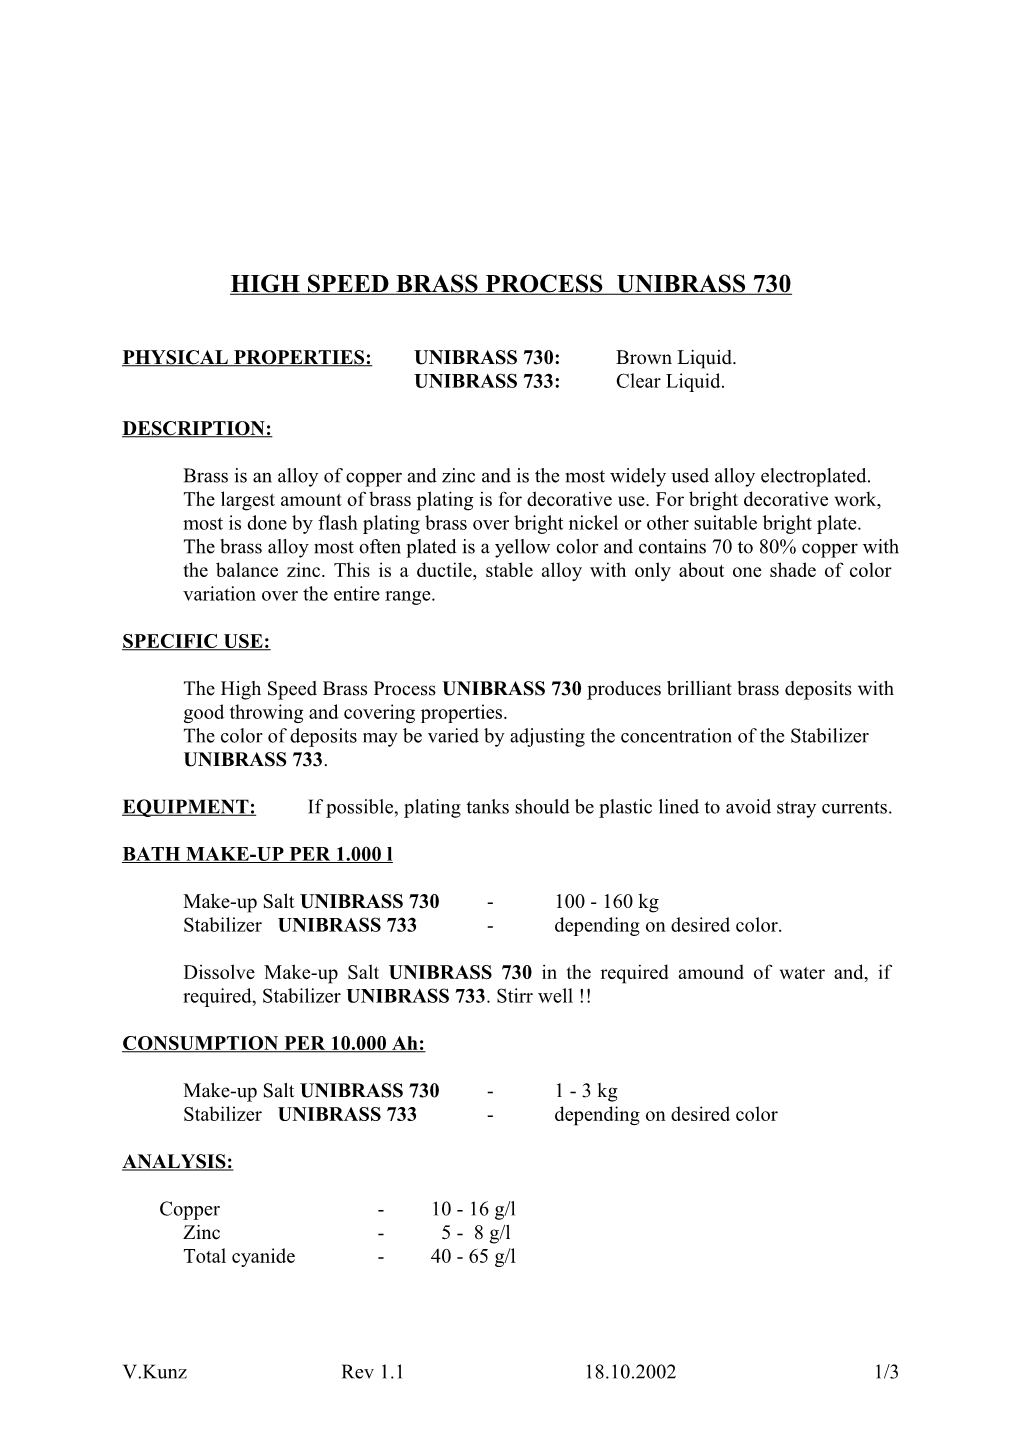 High Speed Brass Process Unibrass 730